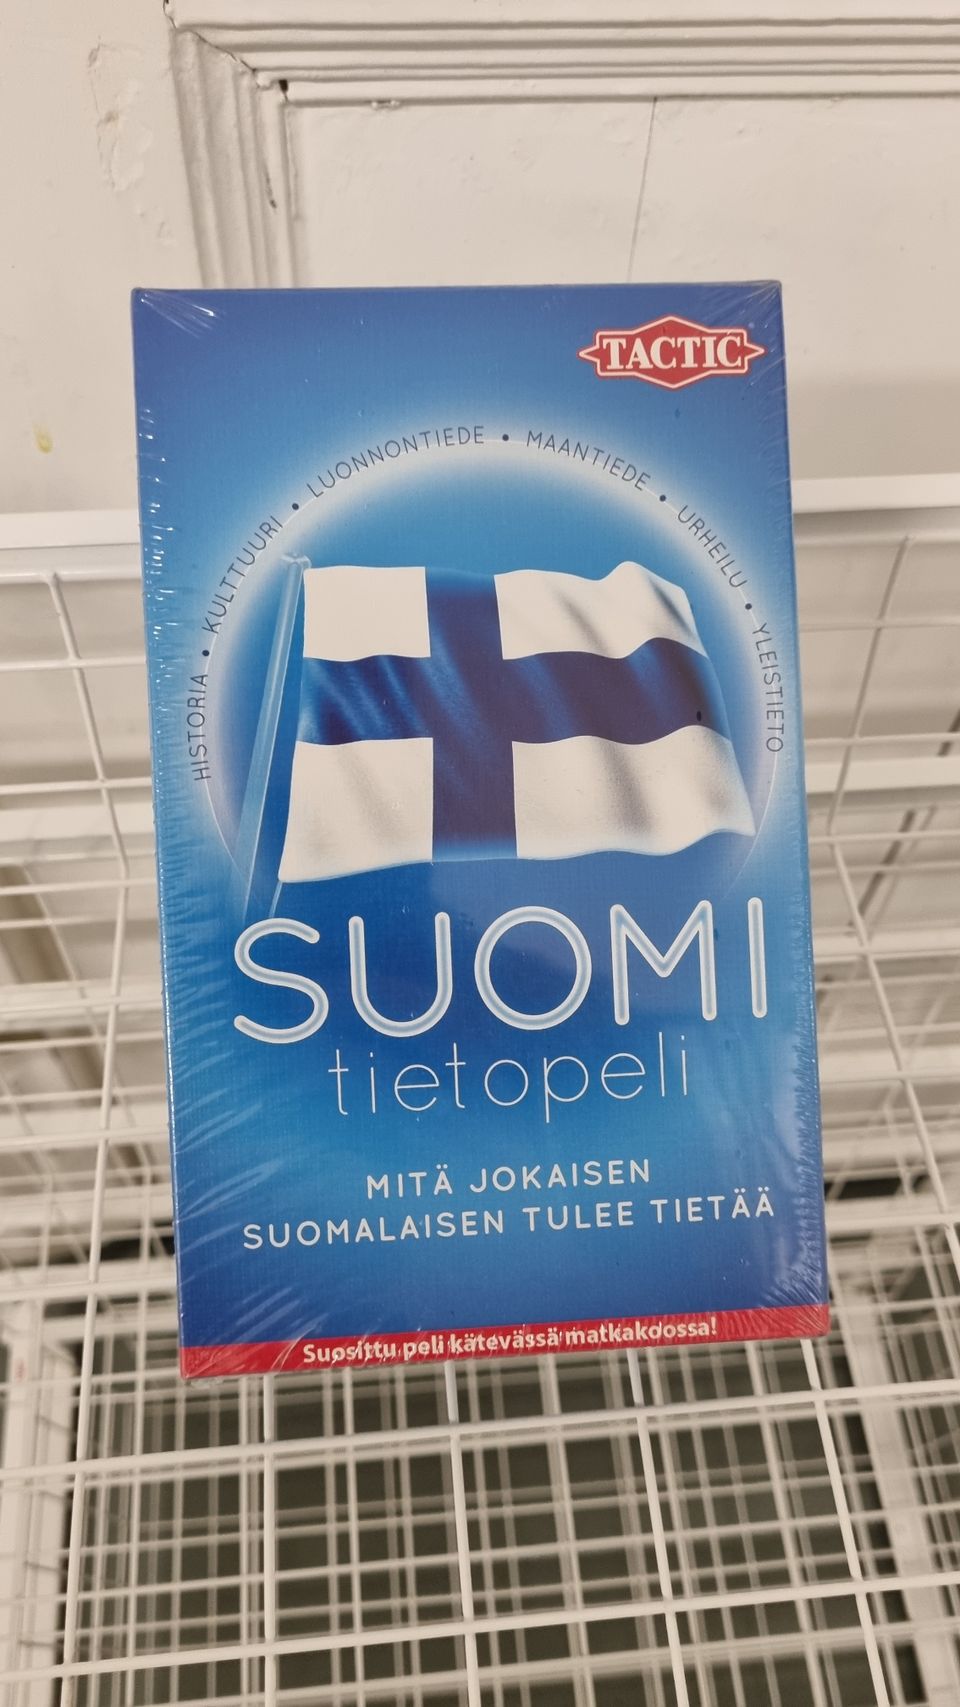 Suomi tietopeli, käyttämätön